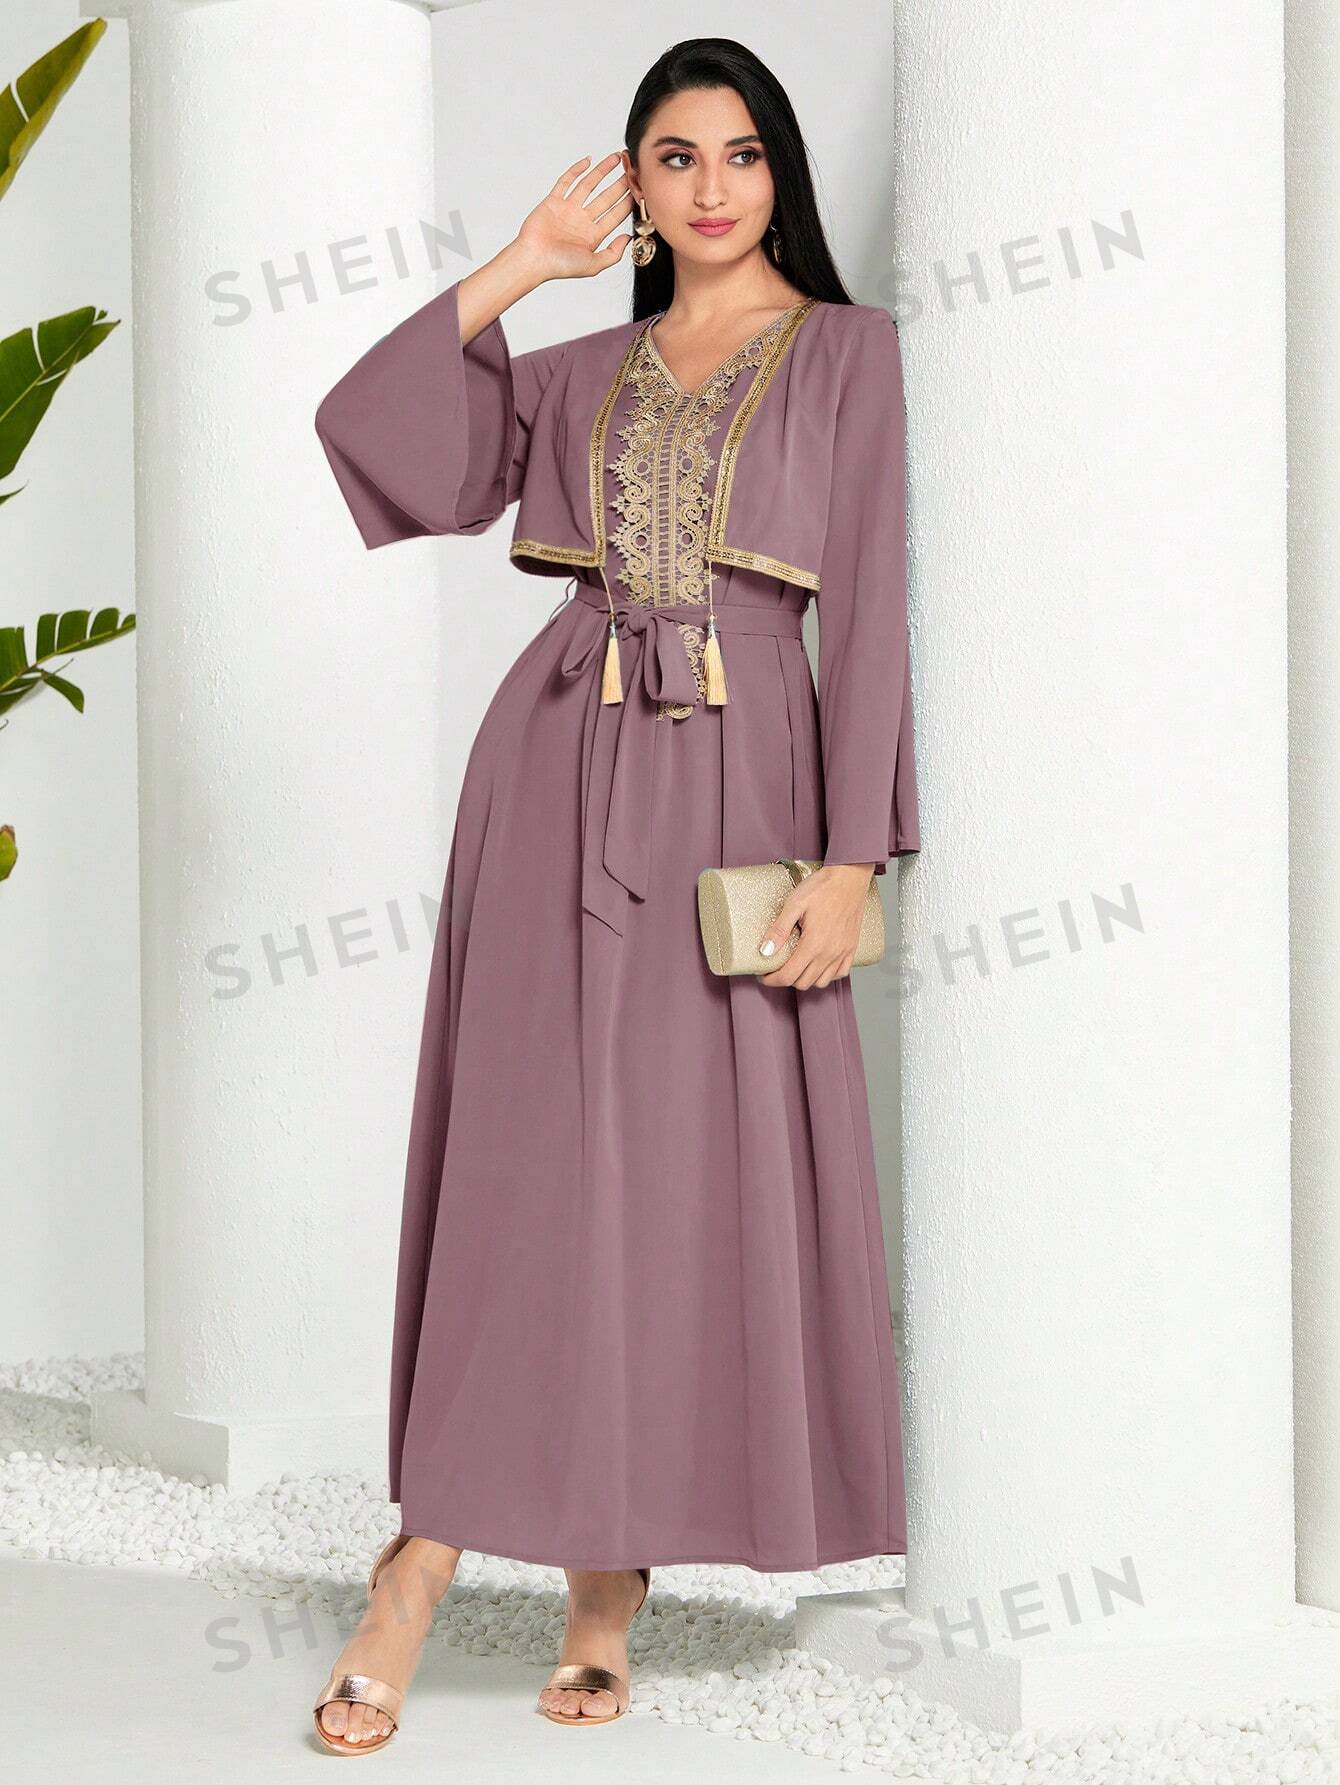 SHEIN Modely женское арабское платье в стиле пэчворк из тканой ленты с бахромой и длинными рукавами, пыльный фиолетовый shein modely женское арабское платье в стиле пэчворк из тканой ленты с бахромой и длинными рукавами пыльный фиолетовый